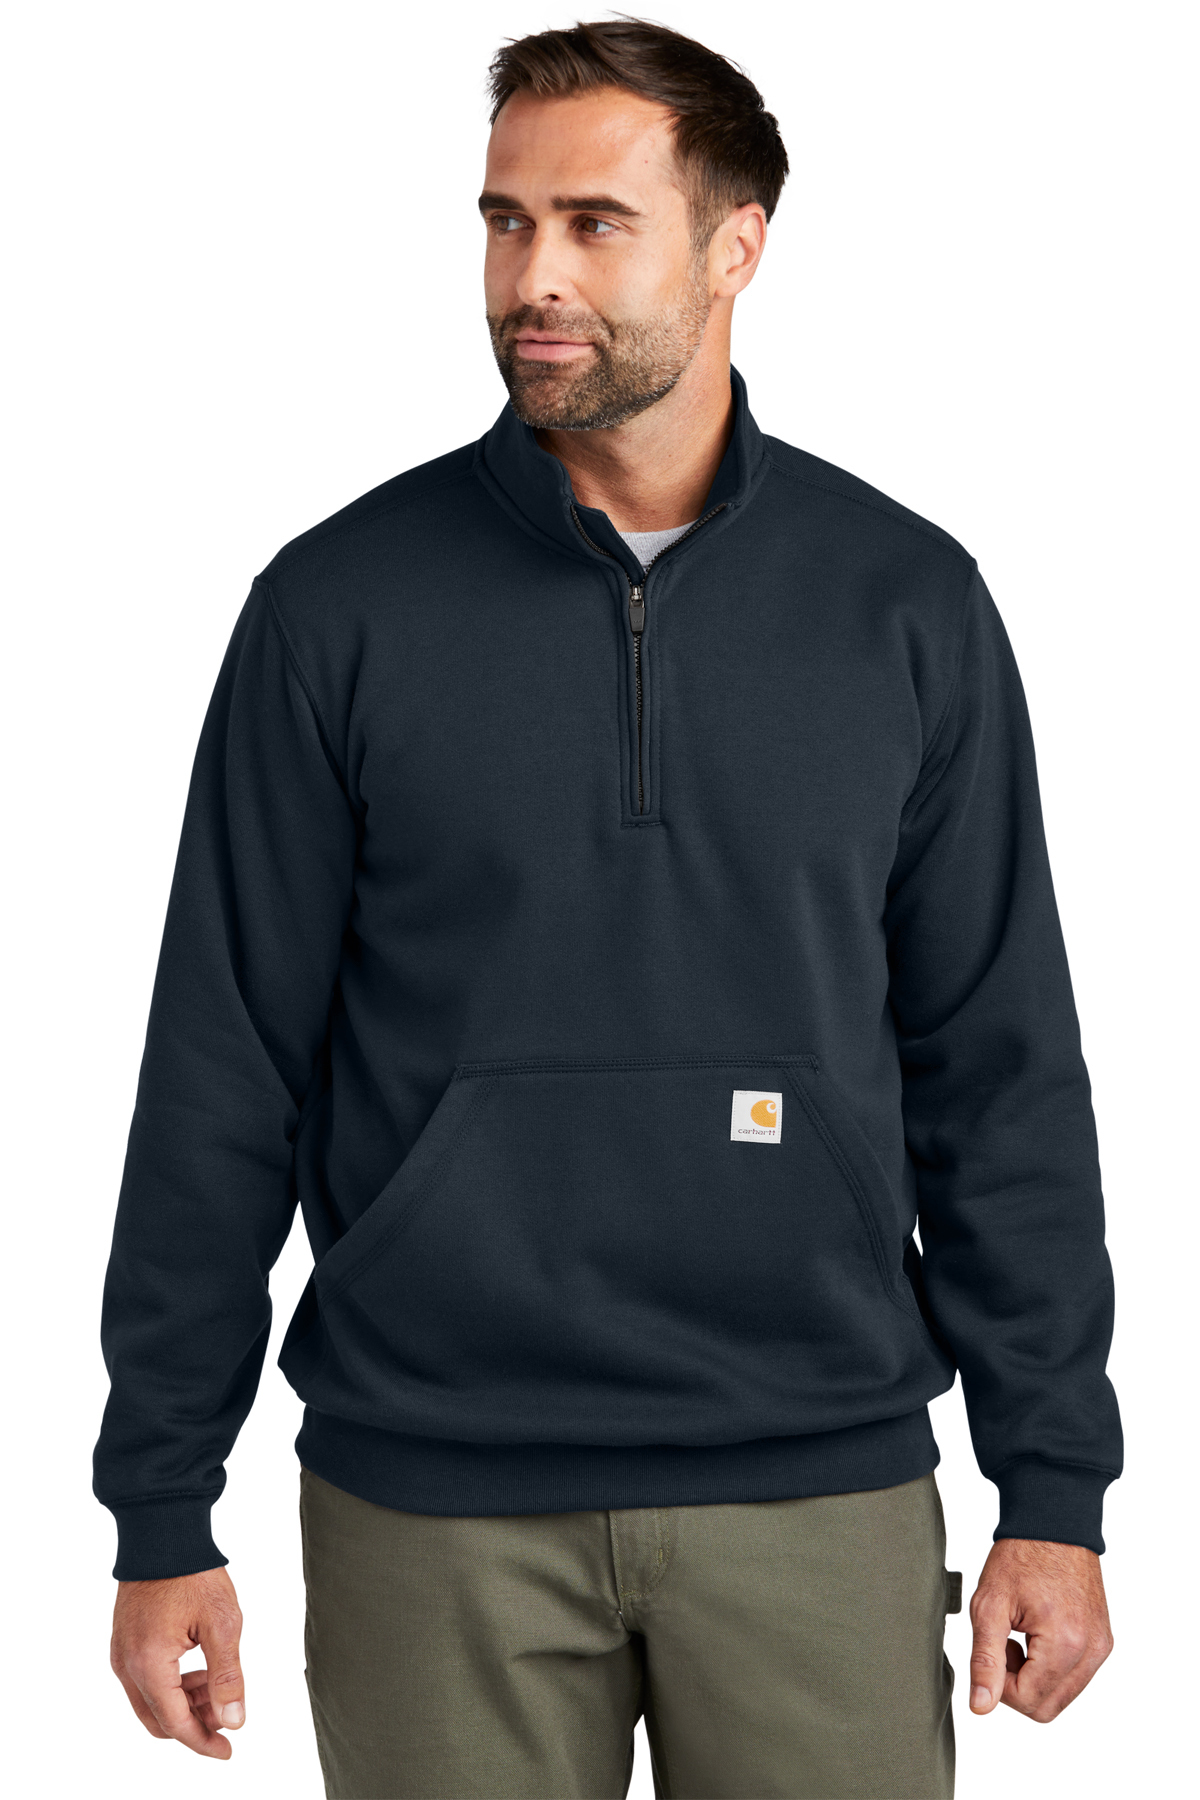 Carhartt Midweight 1/4-Zip Mock Neck Sweatshirt, Product